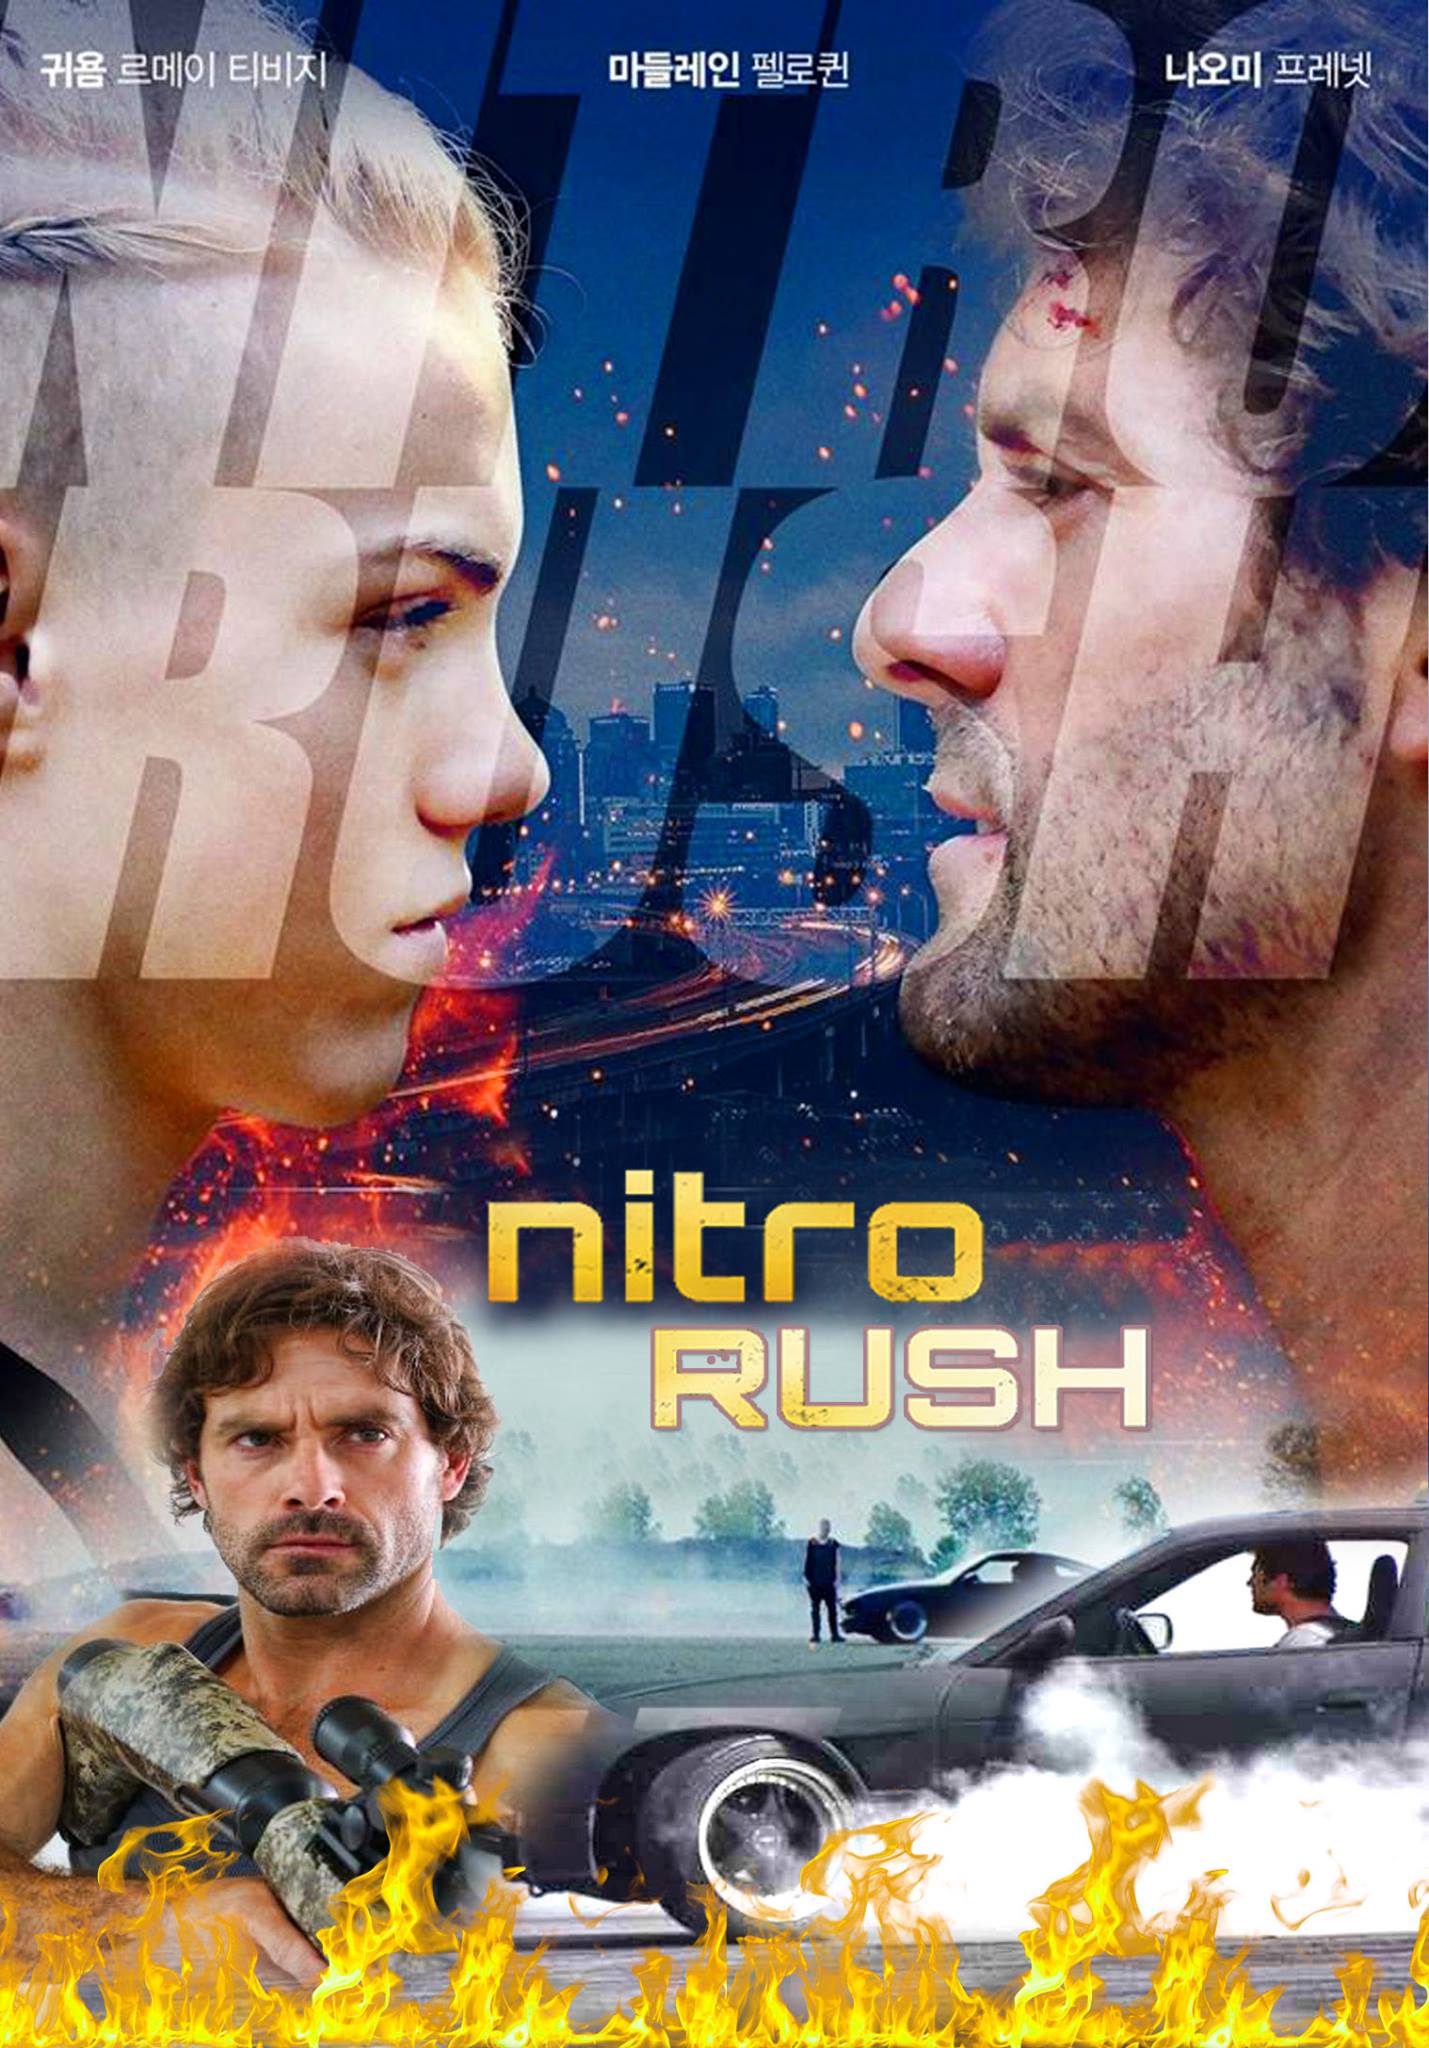 مشاهدة فيلم Nitro Rush 2016 مترجم اون لاين